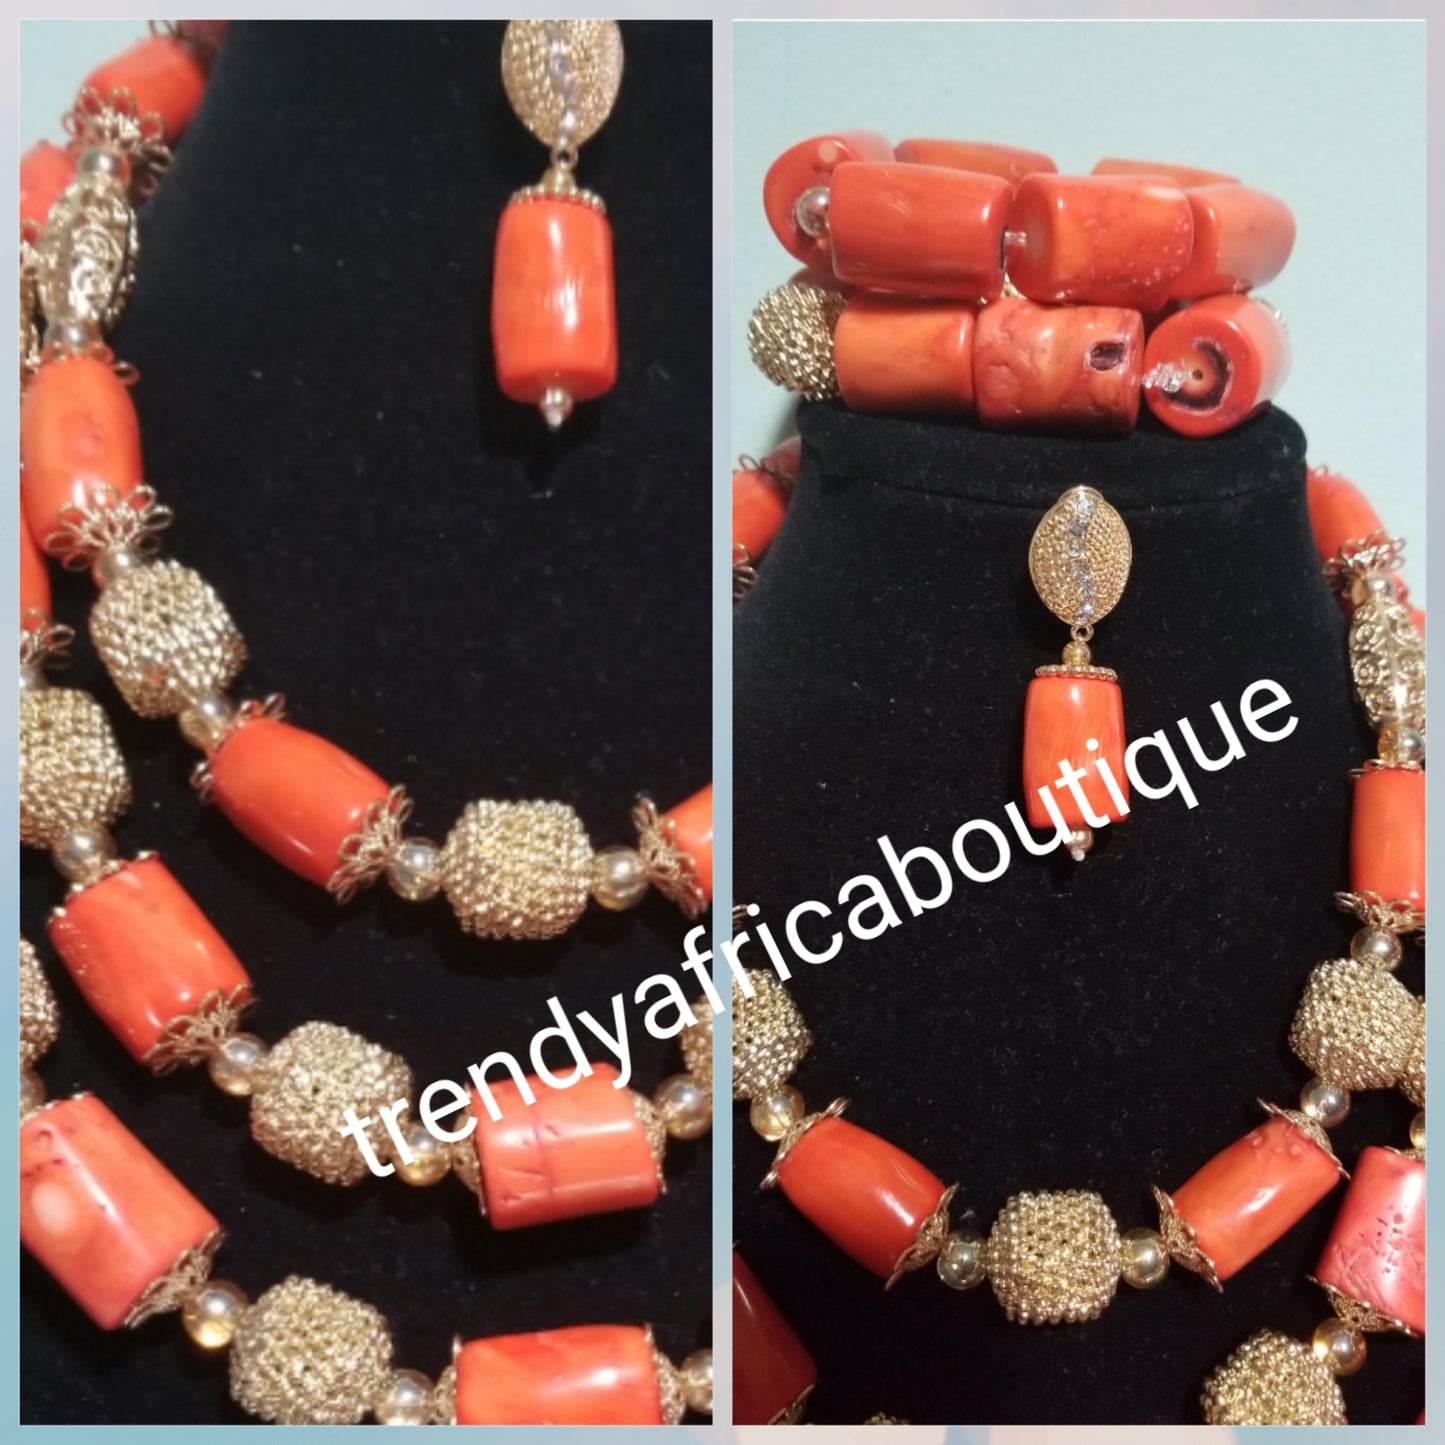 Wieder auf Lager: Original Edo/Nigerianisches Korallen-Perlen-Halsketten-Set. 3-teiliges Set mit Braut- und Hochzeitsaccessoires, Perlen im neuesten Design mit Perlen und Steinen